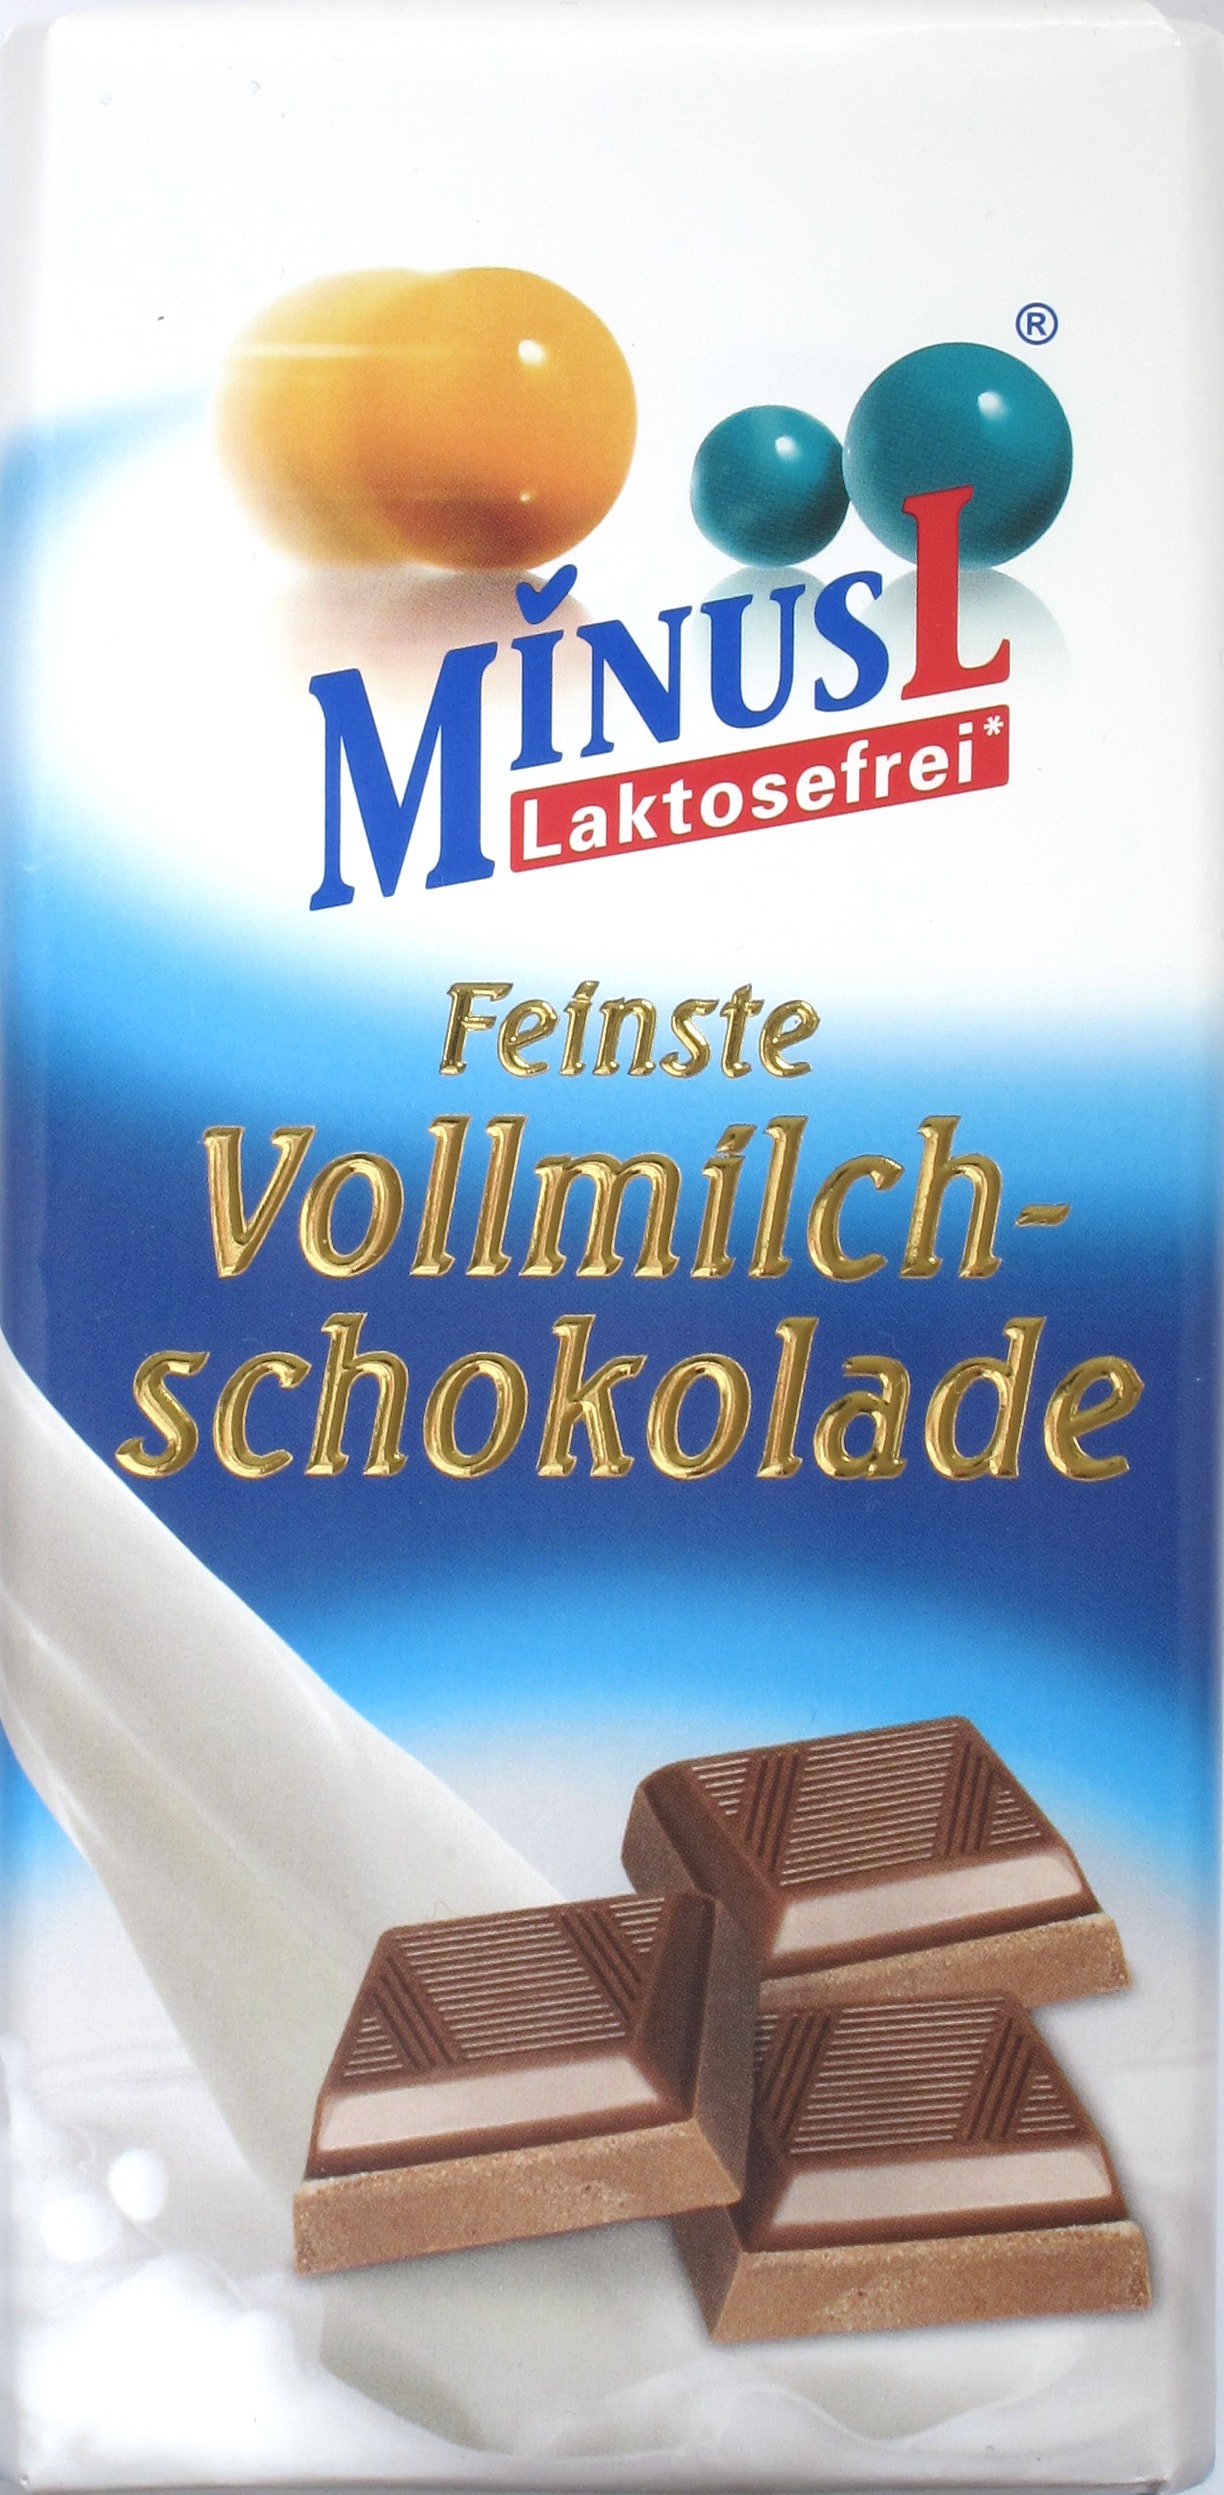 Minus-L Laktosefrei: Milchschokolade, 37%